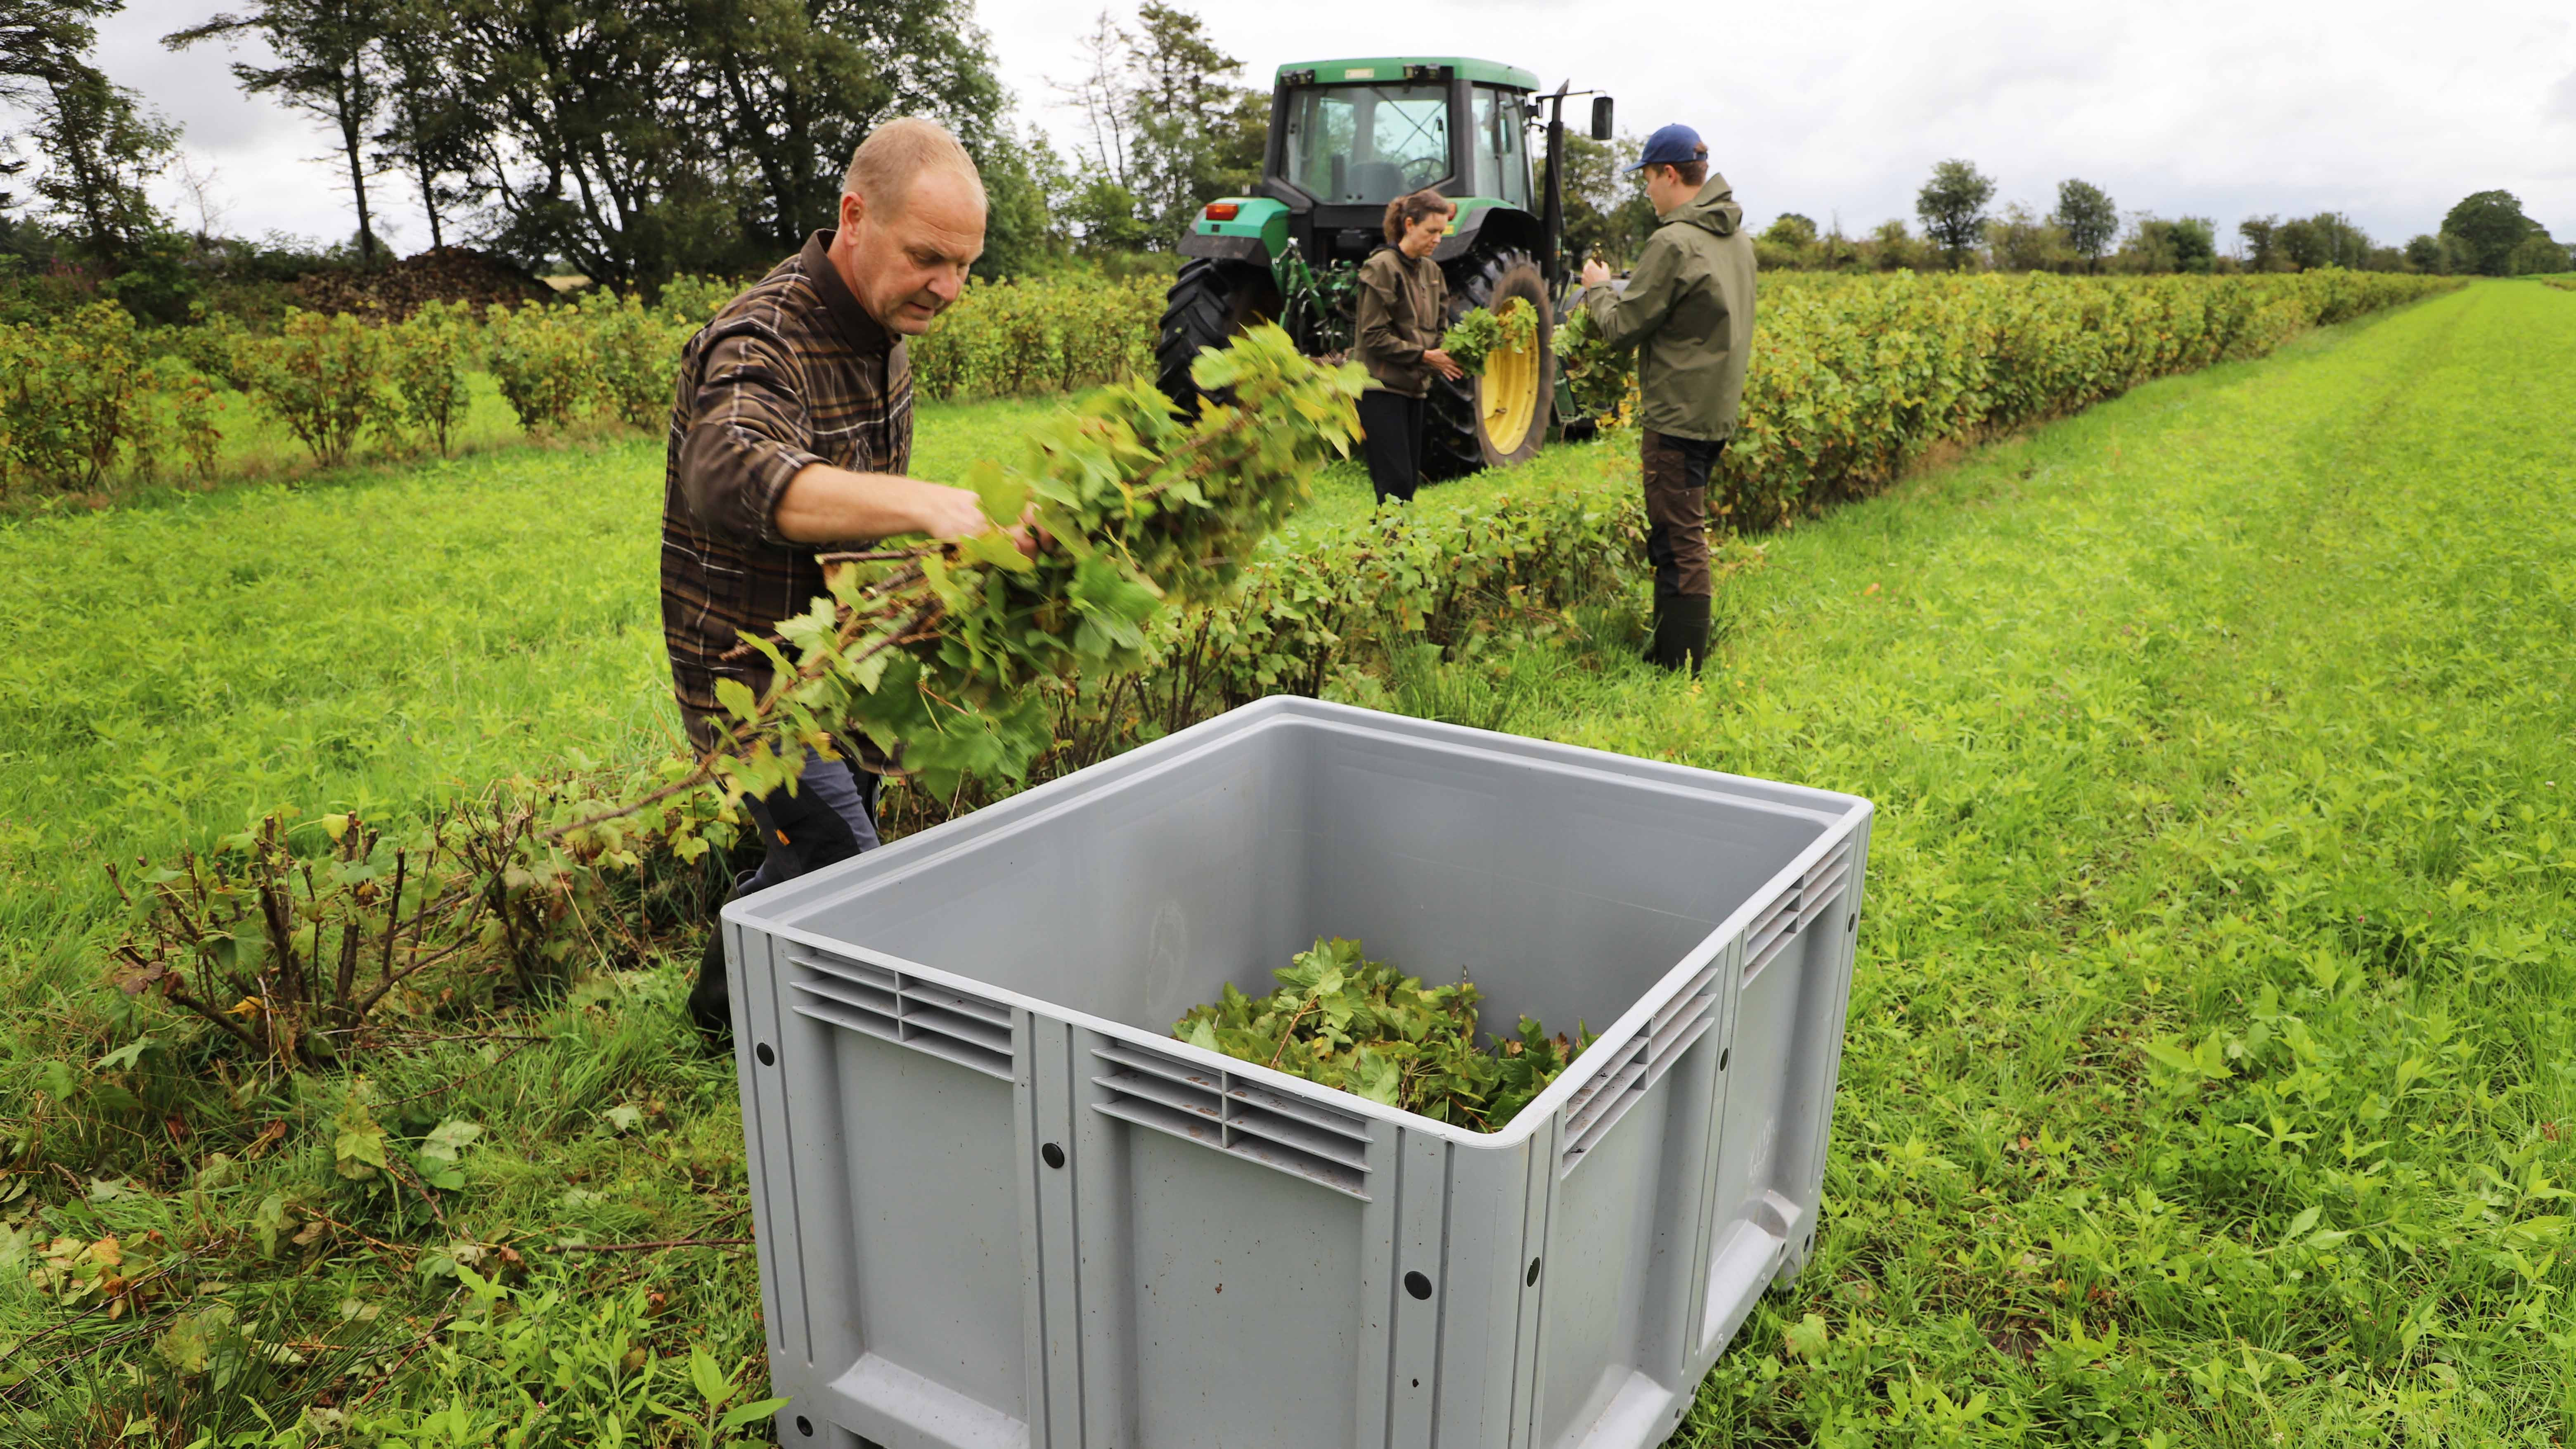 Finn, Helle og Søren Bilberg skærer grene og sorterer dem i deres lille familiedrevne firma Astrup Hede Økobær